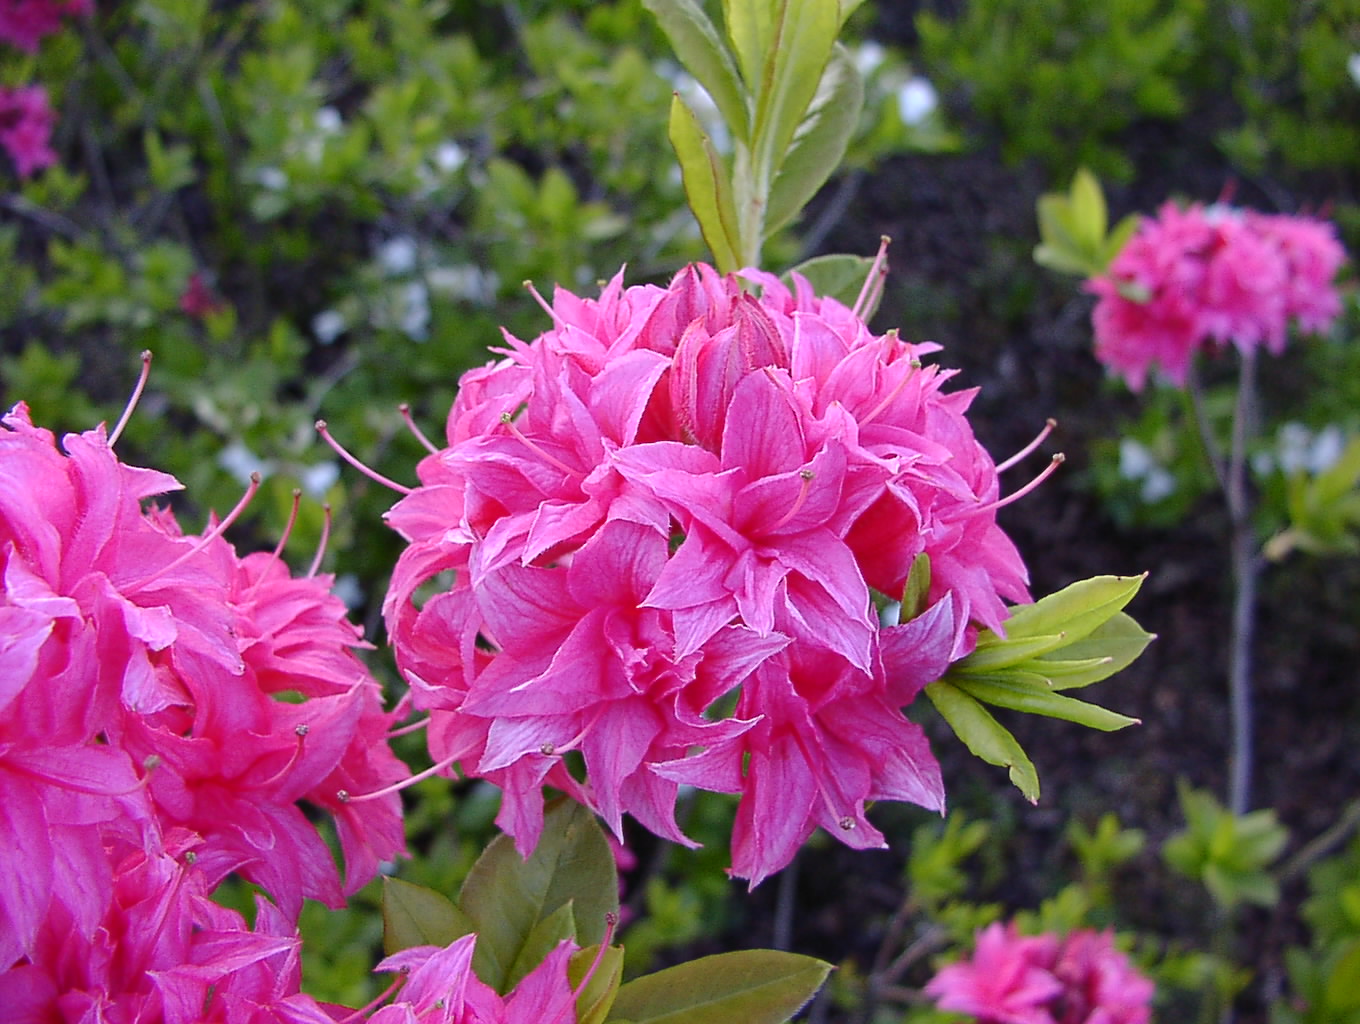 Rhododendron Azalea 'Homebush' verzaubert mit zarten rosa Blüten. Diese Azaleen-Sorte bringt eine sanfte und romantische Note in Ihren Garten.